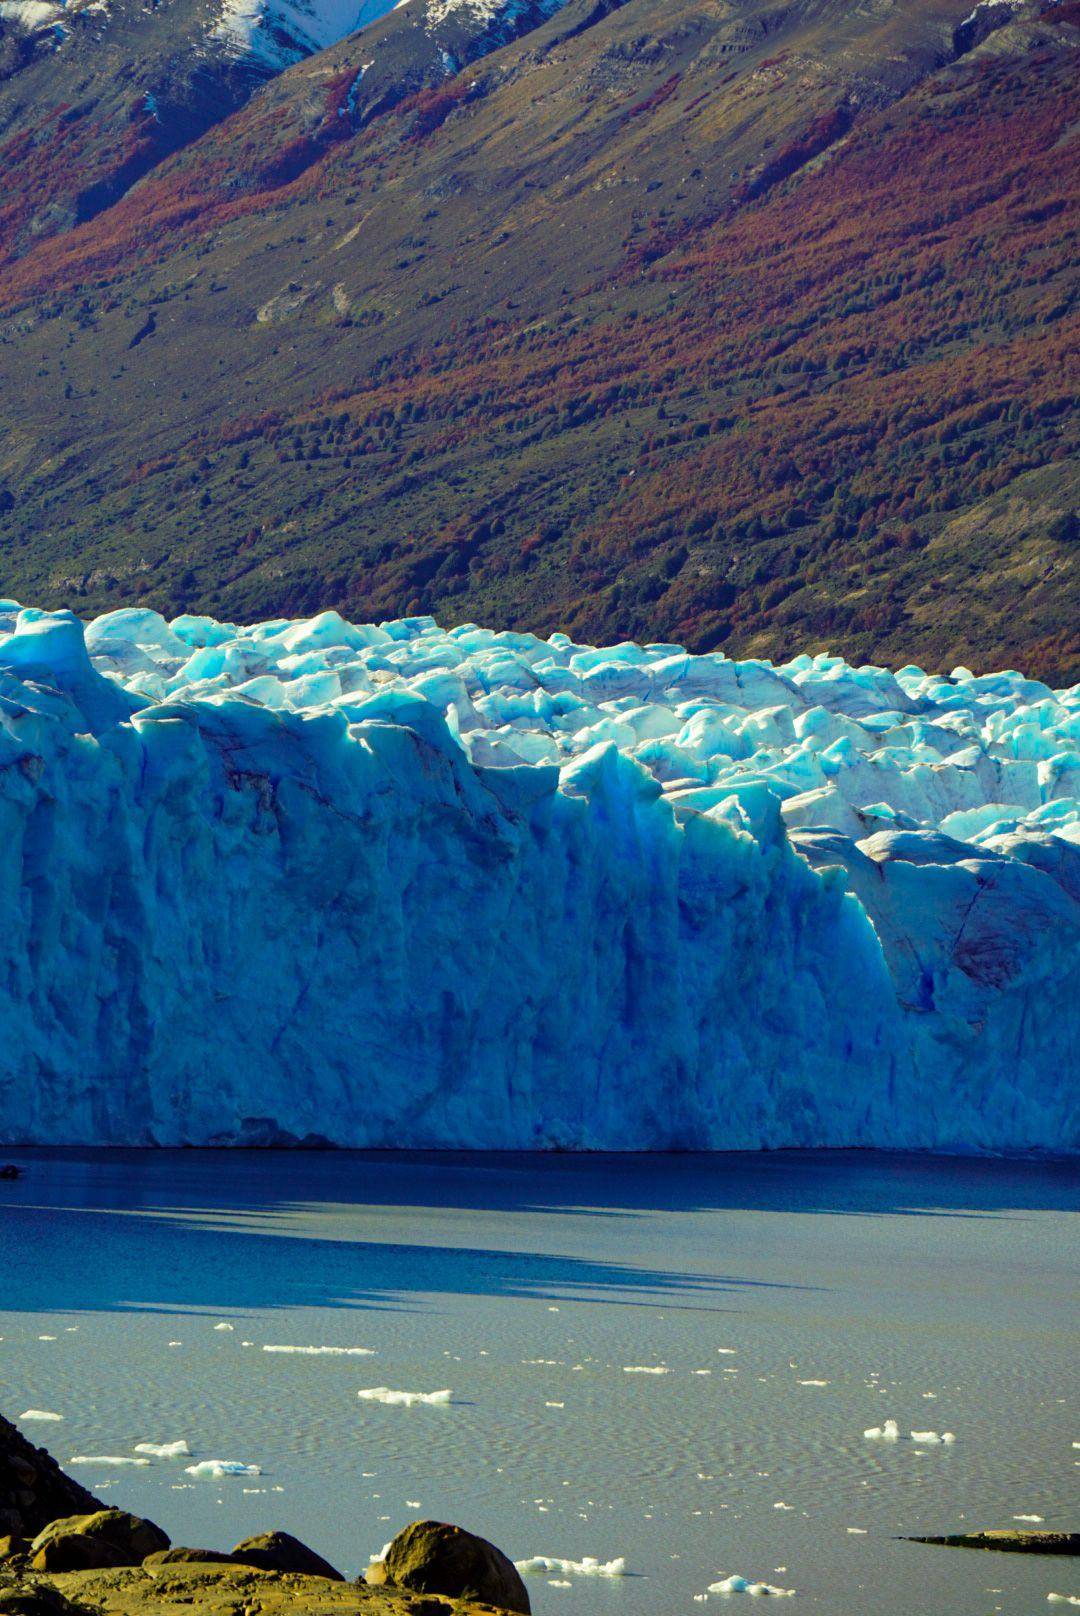 Ontdekking van het Patagonische platteland en bezoek aan de Perito Moreno